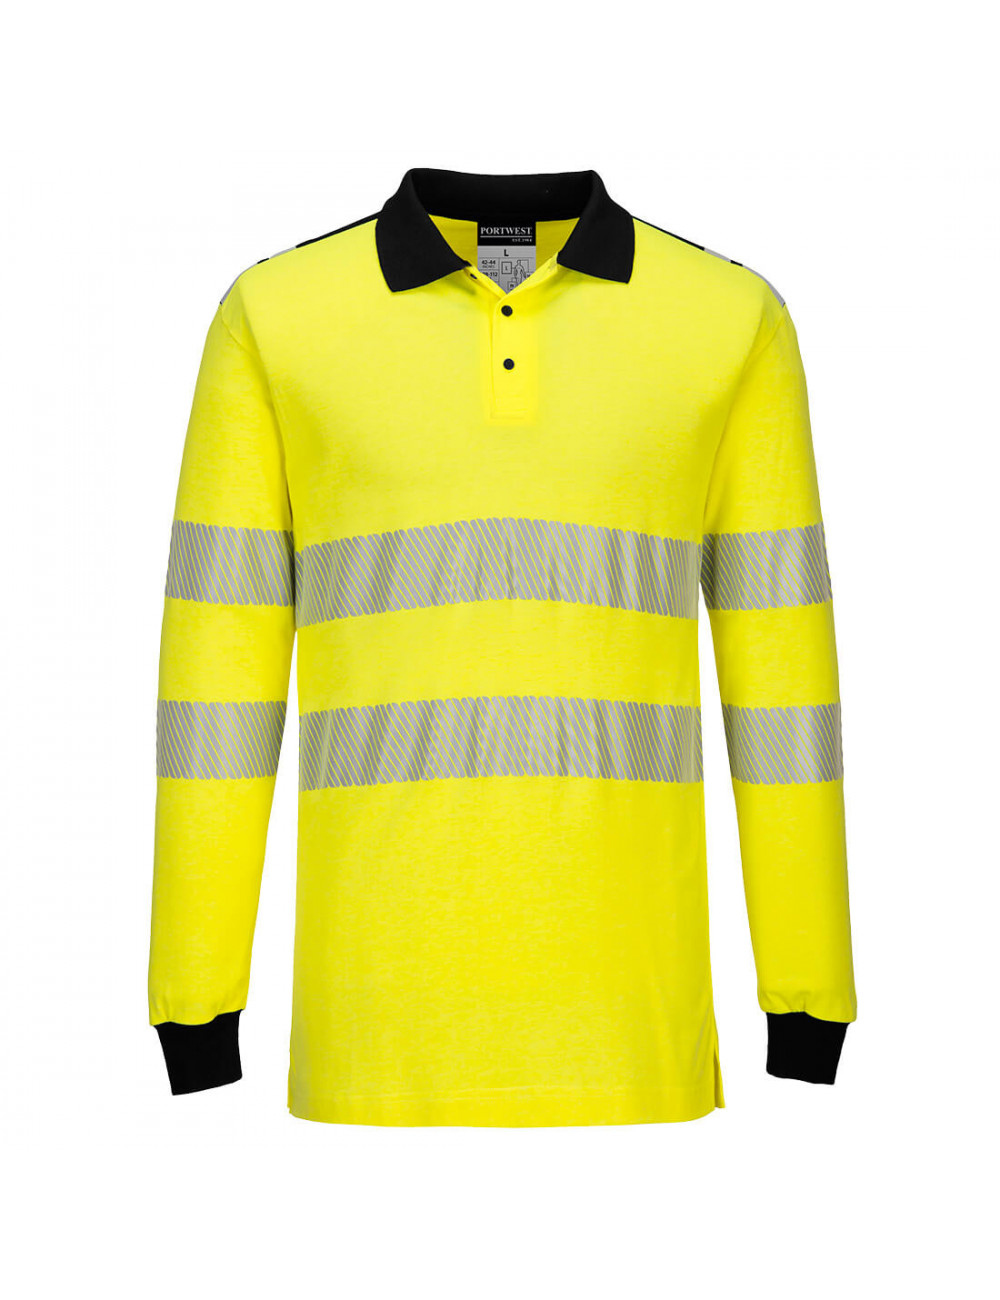 Trudnopalna ostrzegawcza koszulka polo żółto/czarny Portwest